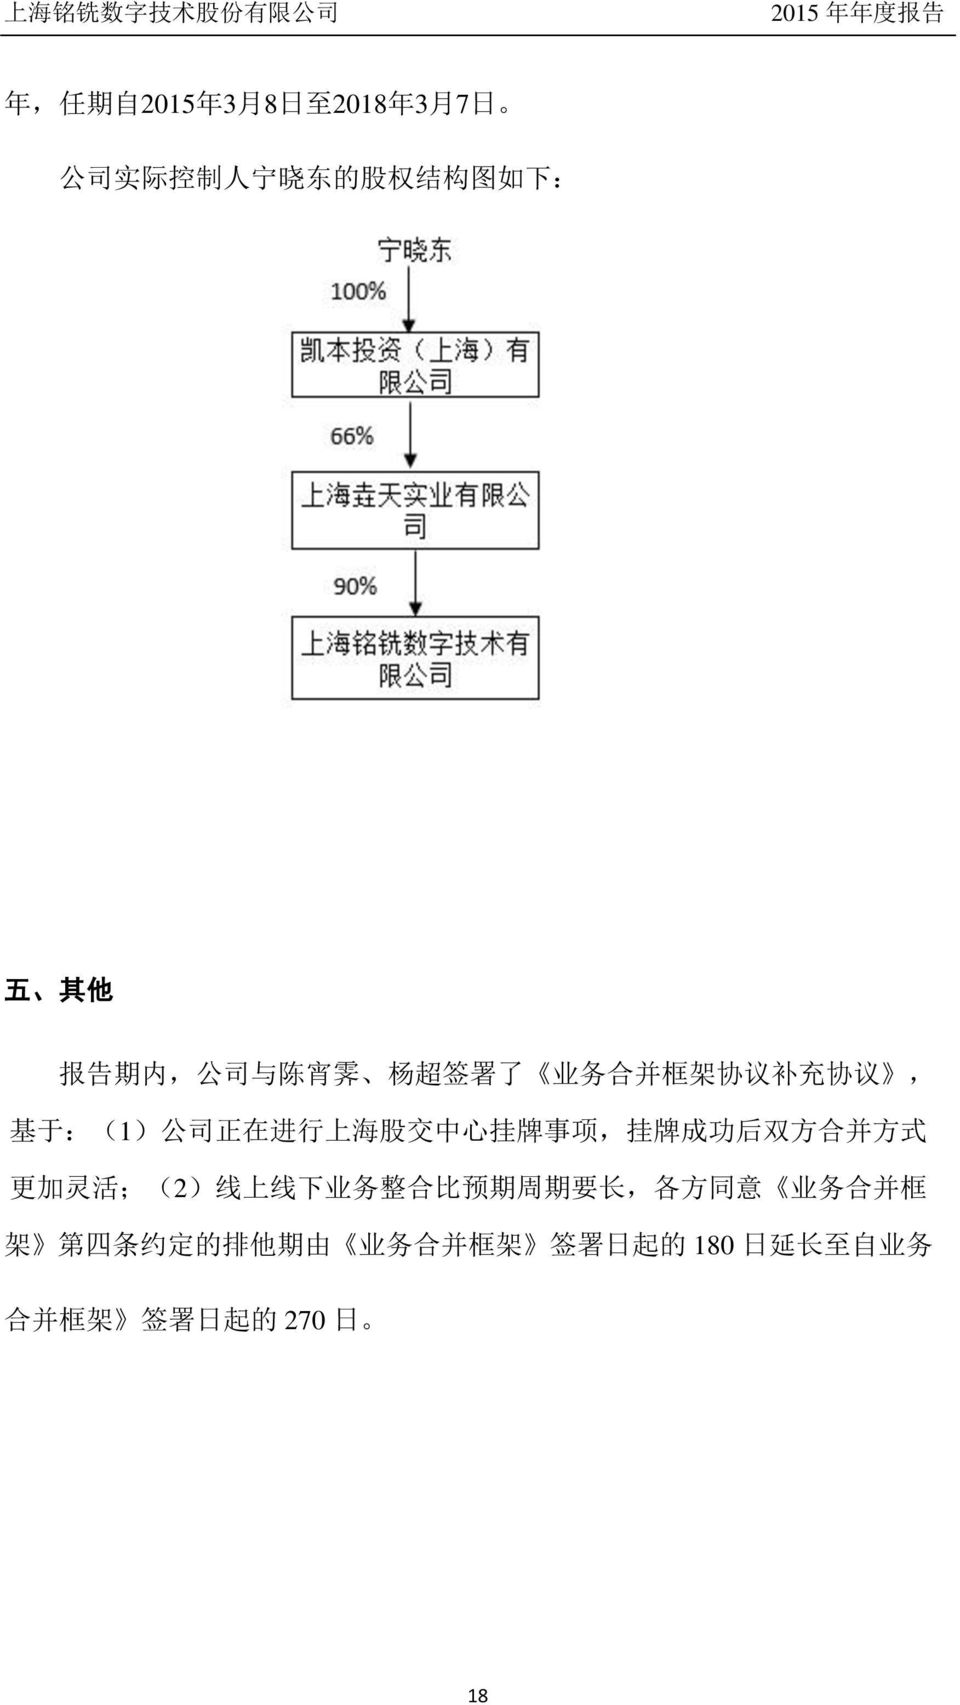 在 进 行 上 海 股 交 中 心 挂 牌 事 项, 挂 牌 成 功 后 双 方 合 并 方 式 更 加 灵 活 ;(2) 线 上 线 下 业 务 整 合 比 预 期 周 期 要 长, 各 方 同